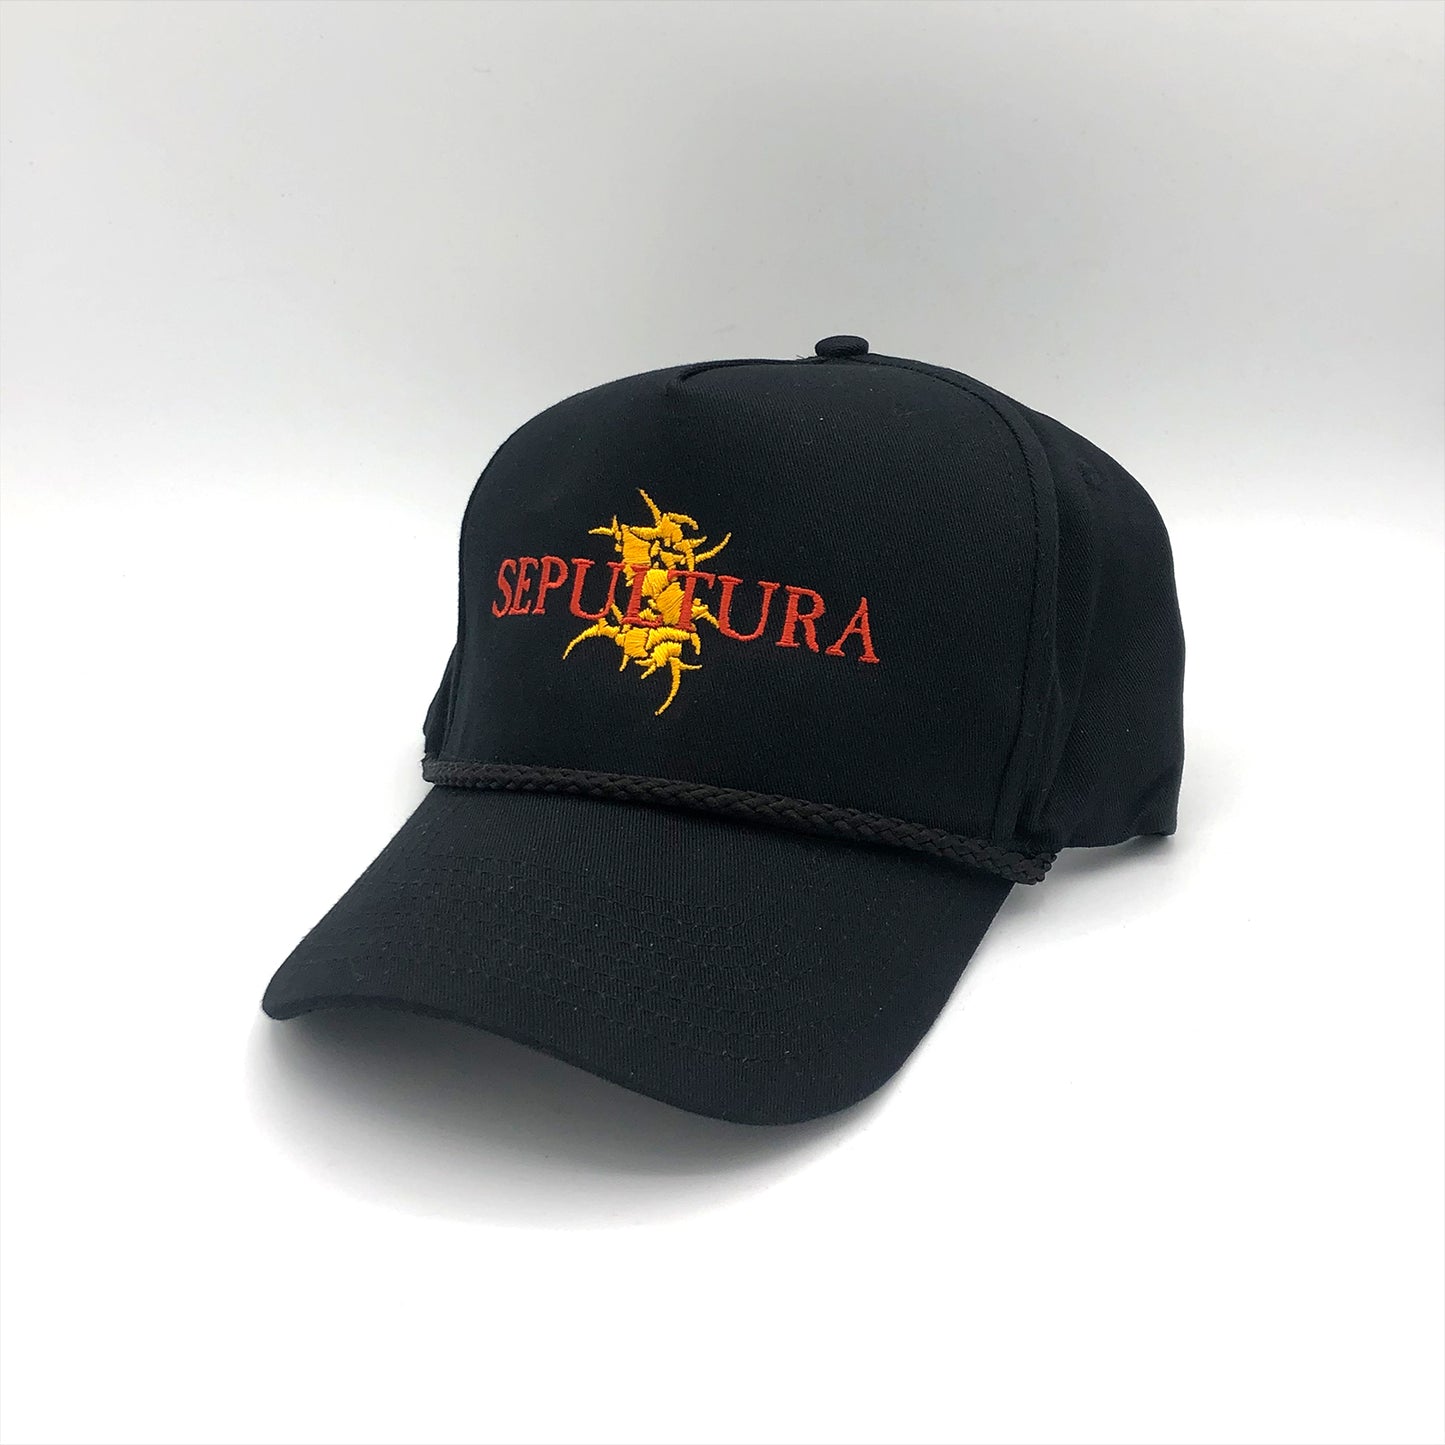 Sepultura Hat